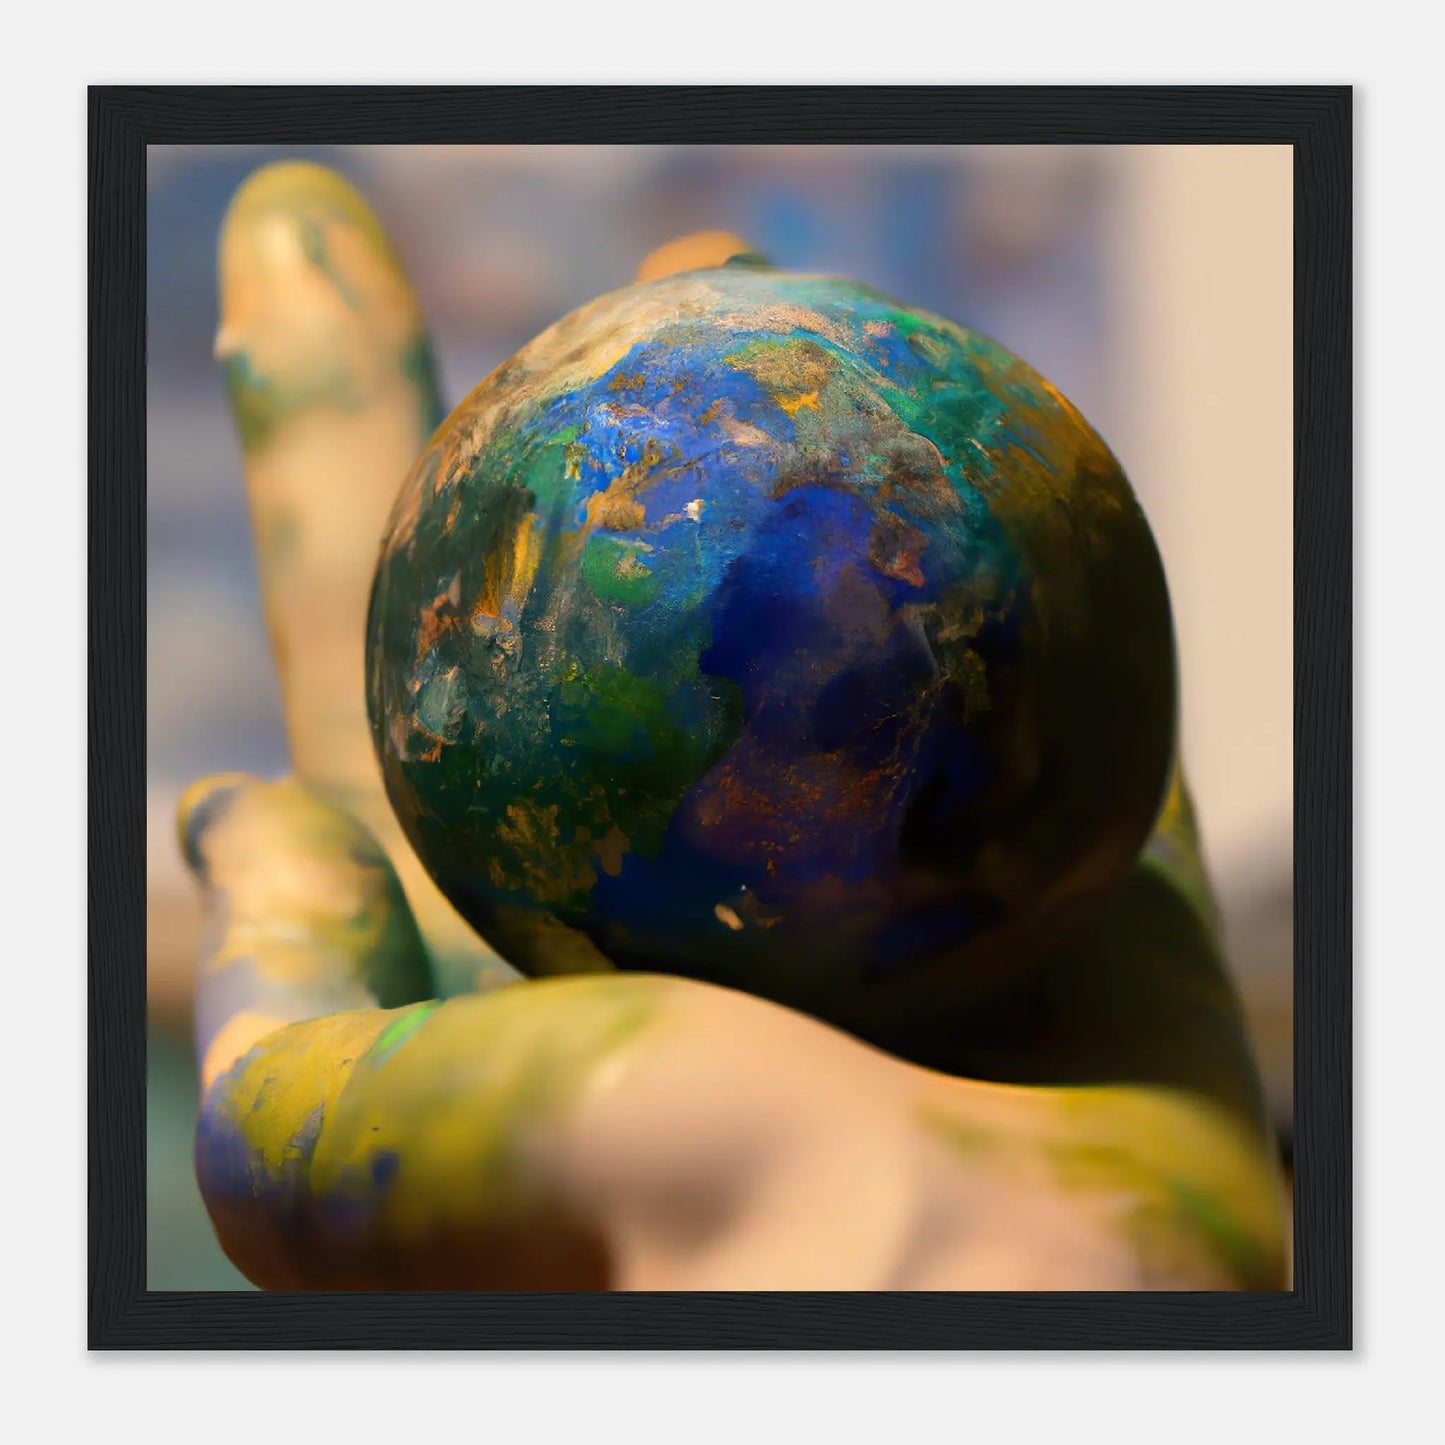 Gerahmtes Premium-Poster - Planet in der Hand - Foto Stil, KI-Kunst - RolConArt, Fotokunst - Kreative Vielfalt, 30x30-cm-12x12-Schwarz